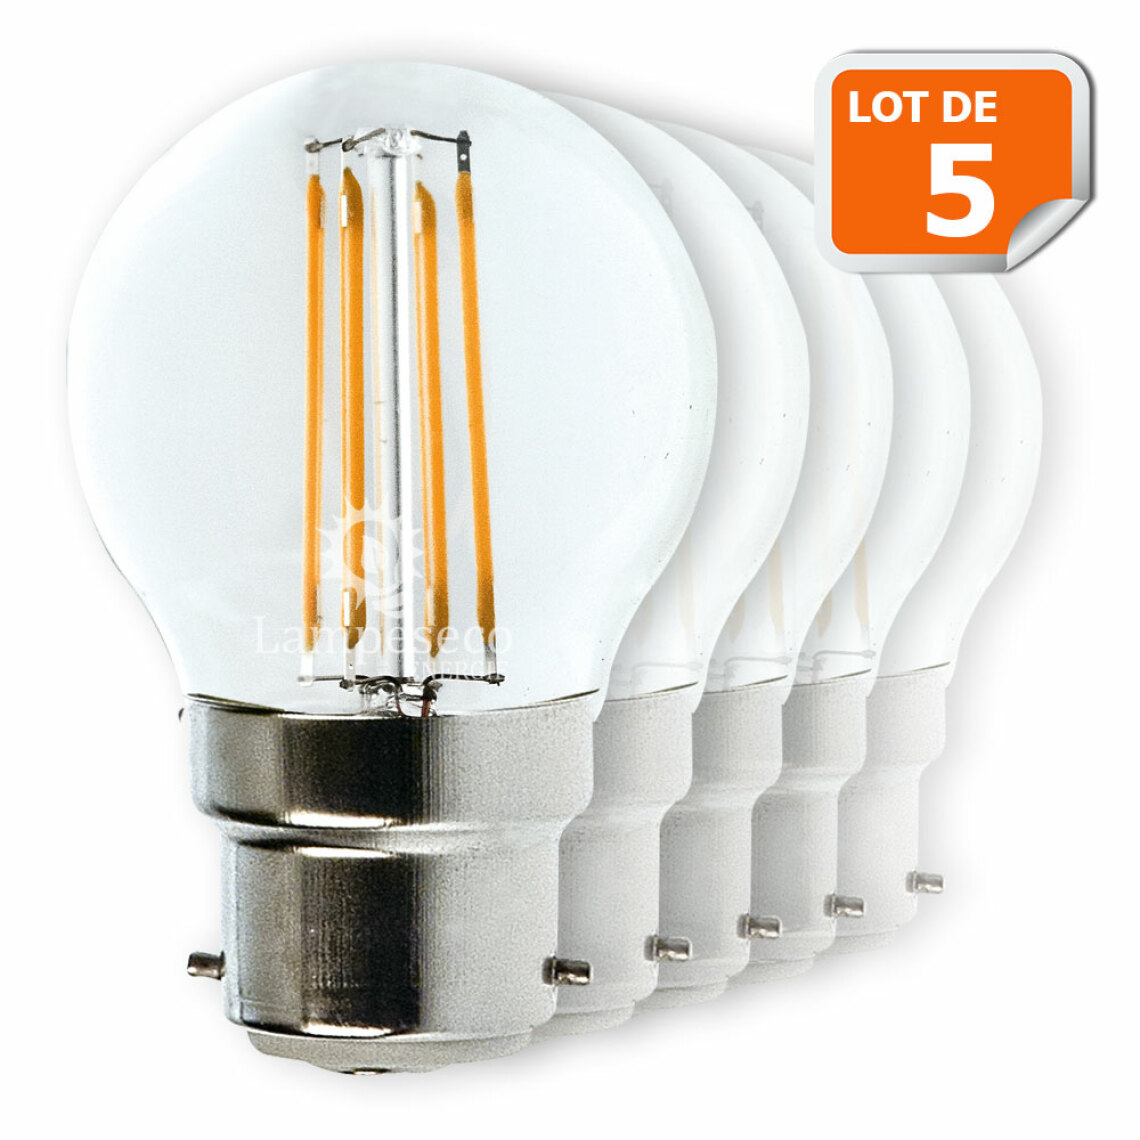 Lampesecoenergie - Lot de 5 Ampoules Led Filament Culot B22 forme G45 4 Watt (éq 42 watts) Blanc Chaud - Ampoules LED